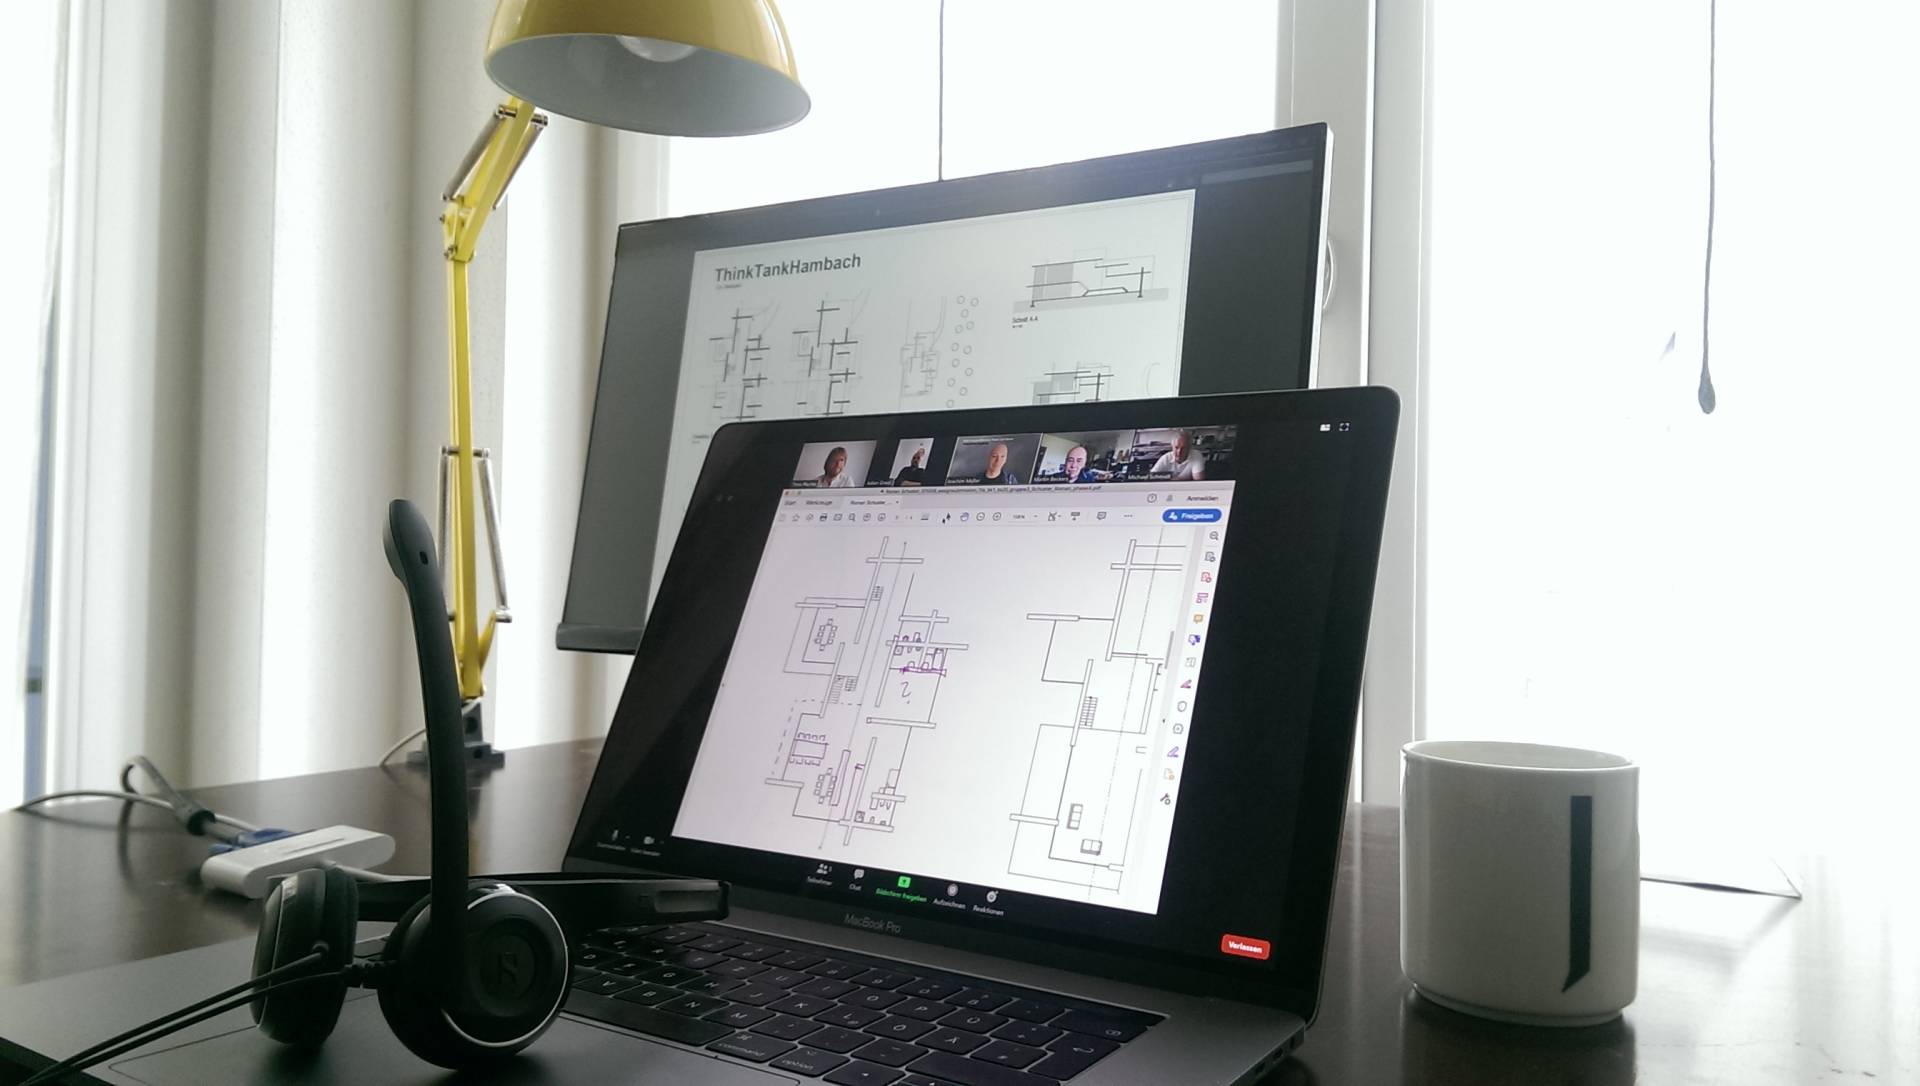 Entwurfsbetreuung im Home-Office: Laptop, Tablet mit Stift als virtuelle Tafel und Skizziermöglichkeit in den Upload-Plänen, Headset mit Mikrofon.